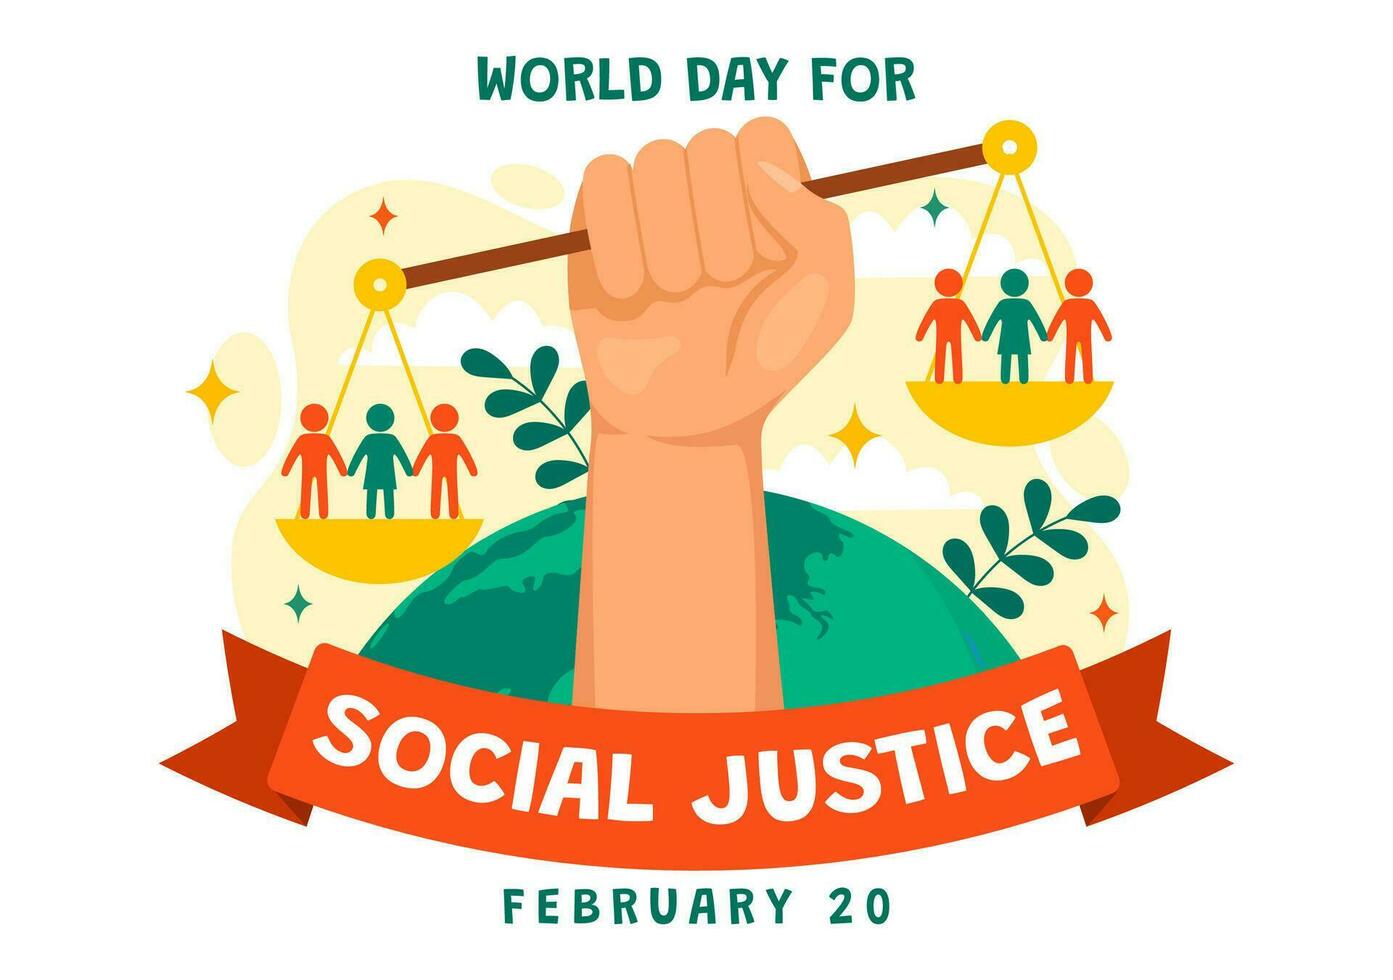 värld dag av social rättvisa vektor illustration på februari 20 med skalor eller hammare för en bara relation och orättvisa skydd i bakgrund